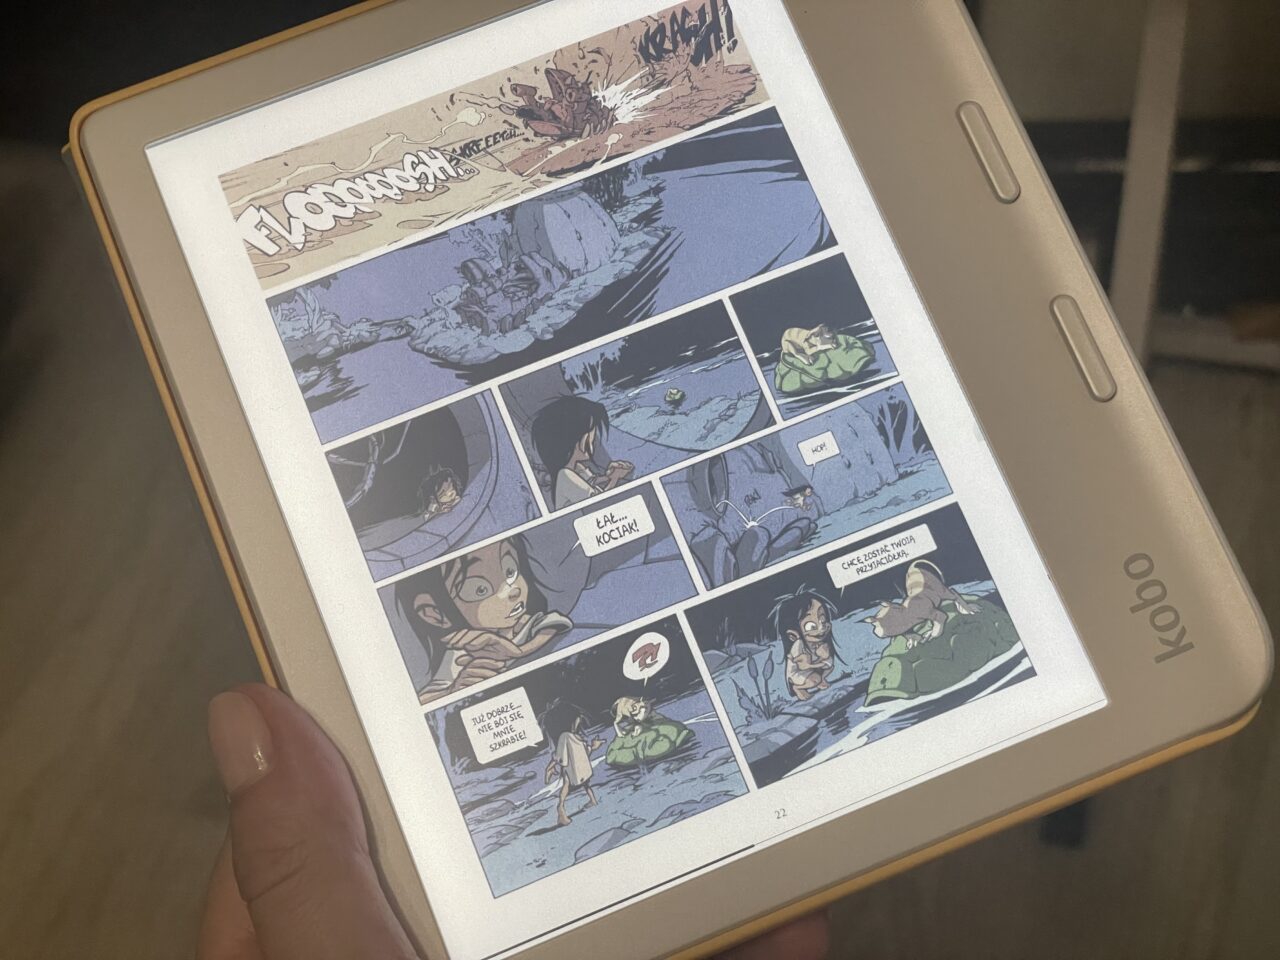 Ręka trzyma czytnik e-booków z wyświetlaną stroną komiksu zawierającą wiele kolorowych paneli z postaciami i tekstami.